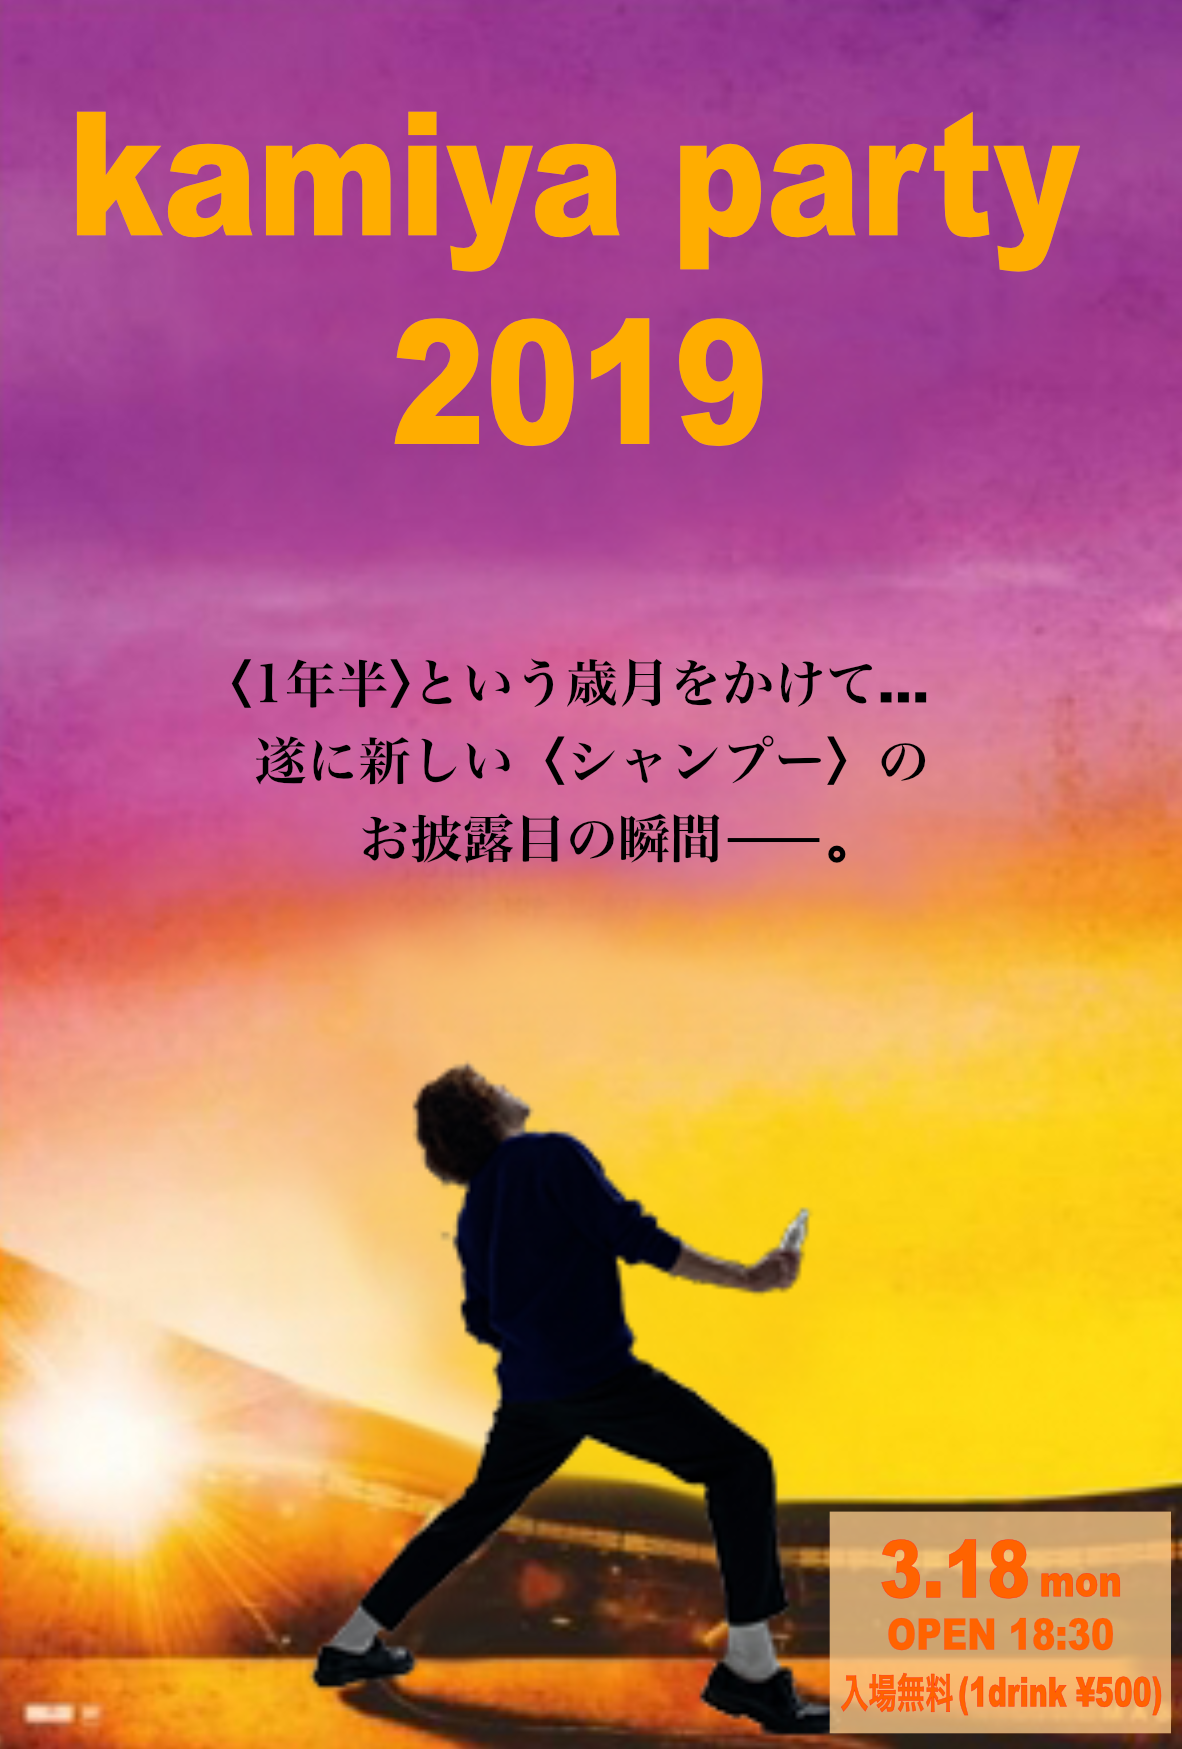 2019.3.18(月) kamiya party 2019開催のお知らせ♪